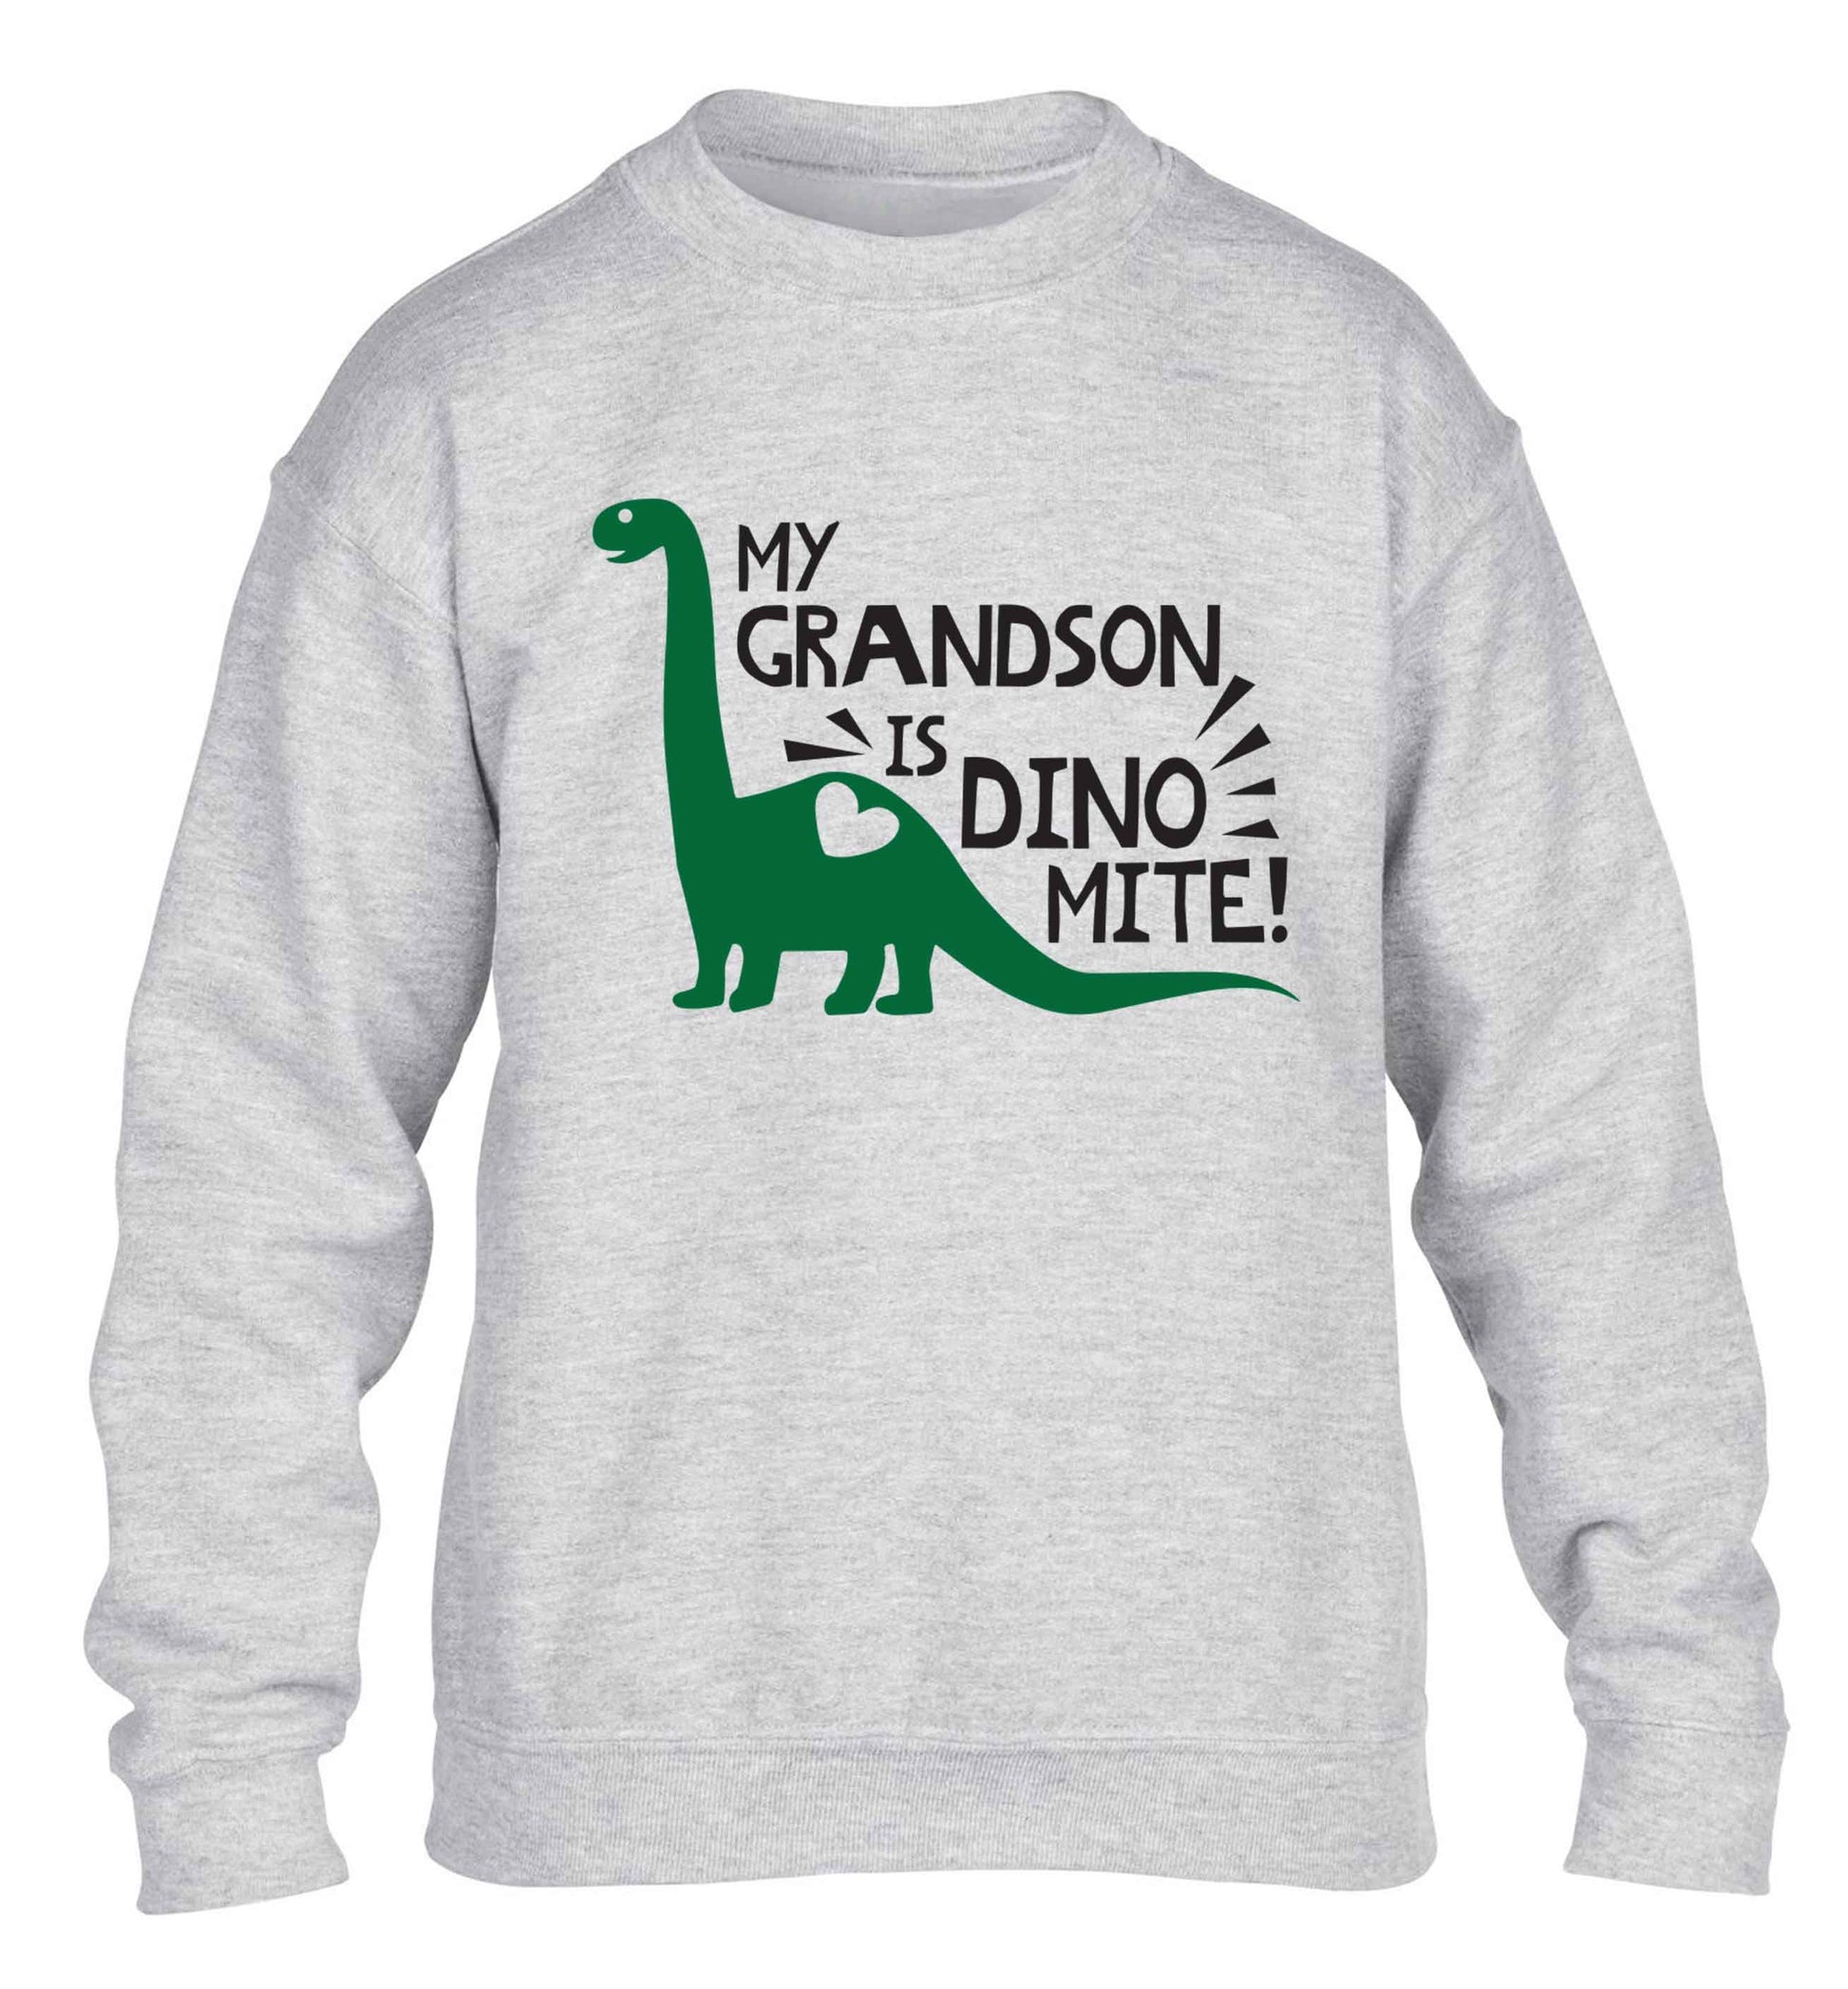 My grandson is dinomite! children's grey sweater 12-13 Years